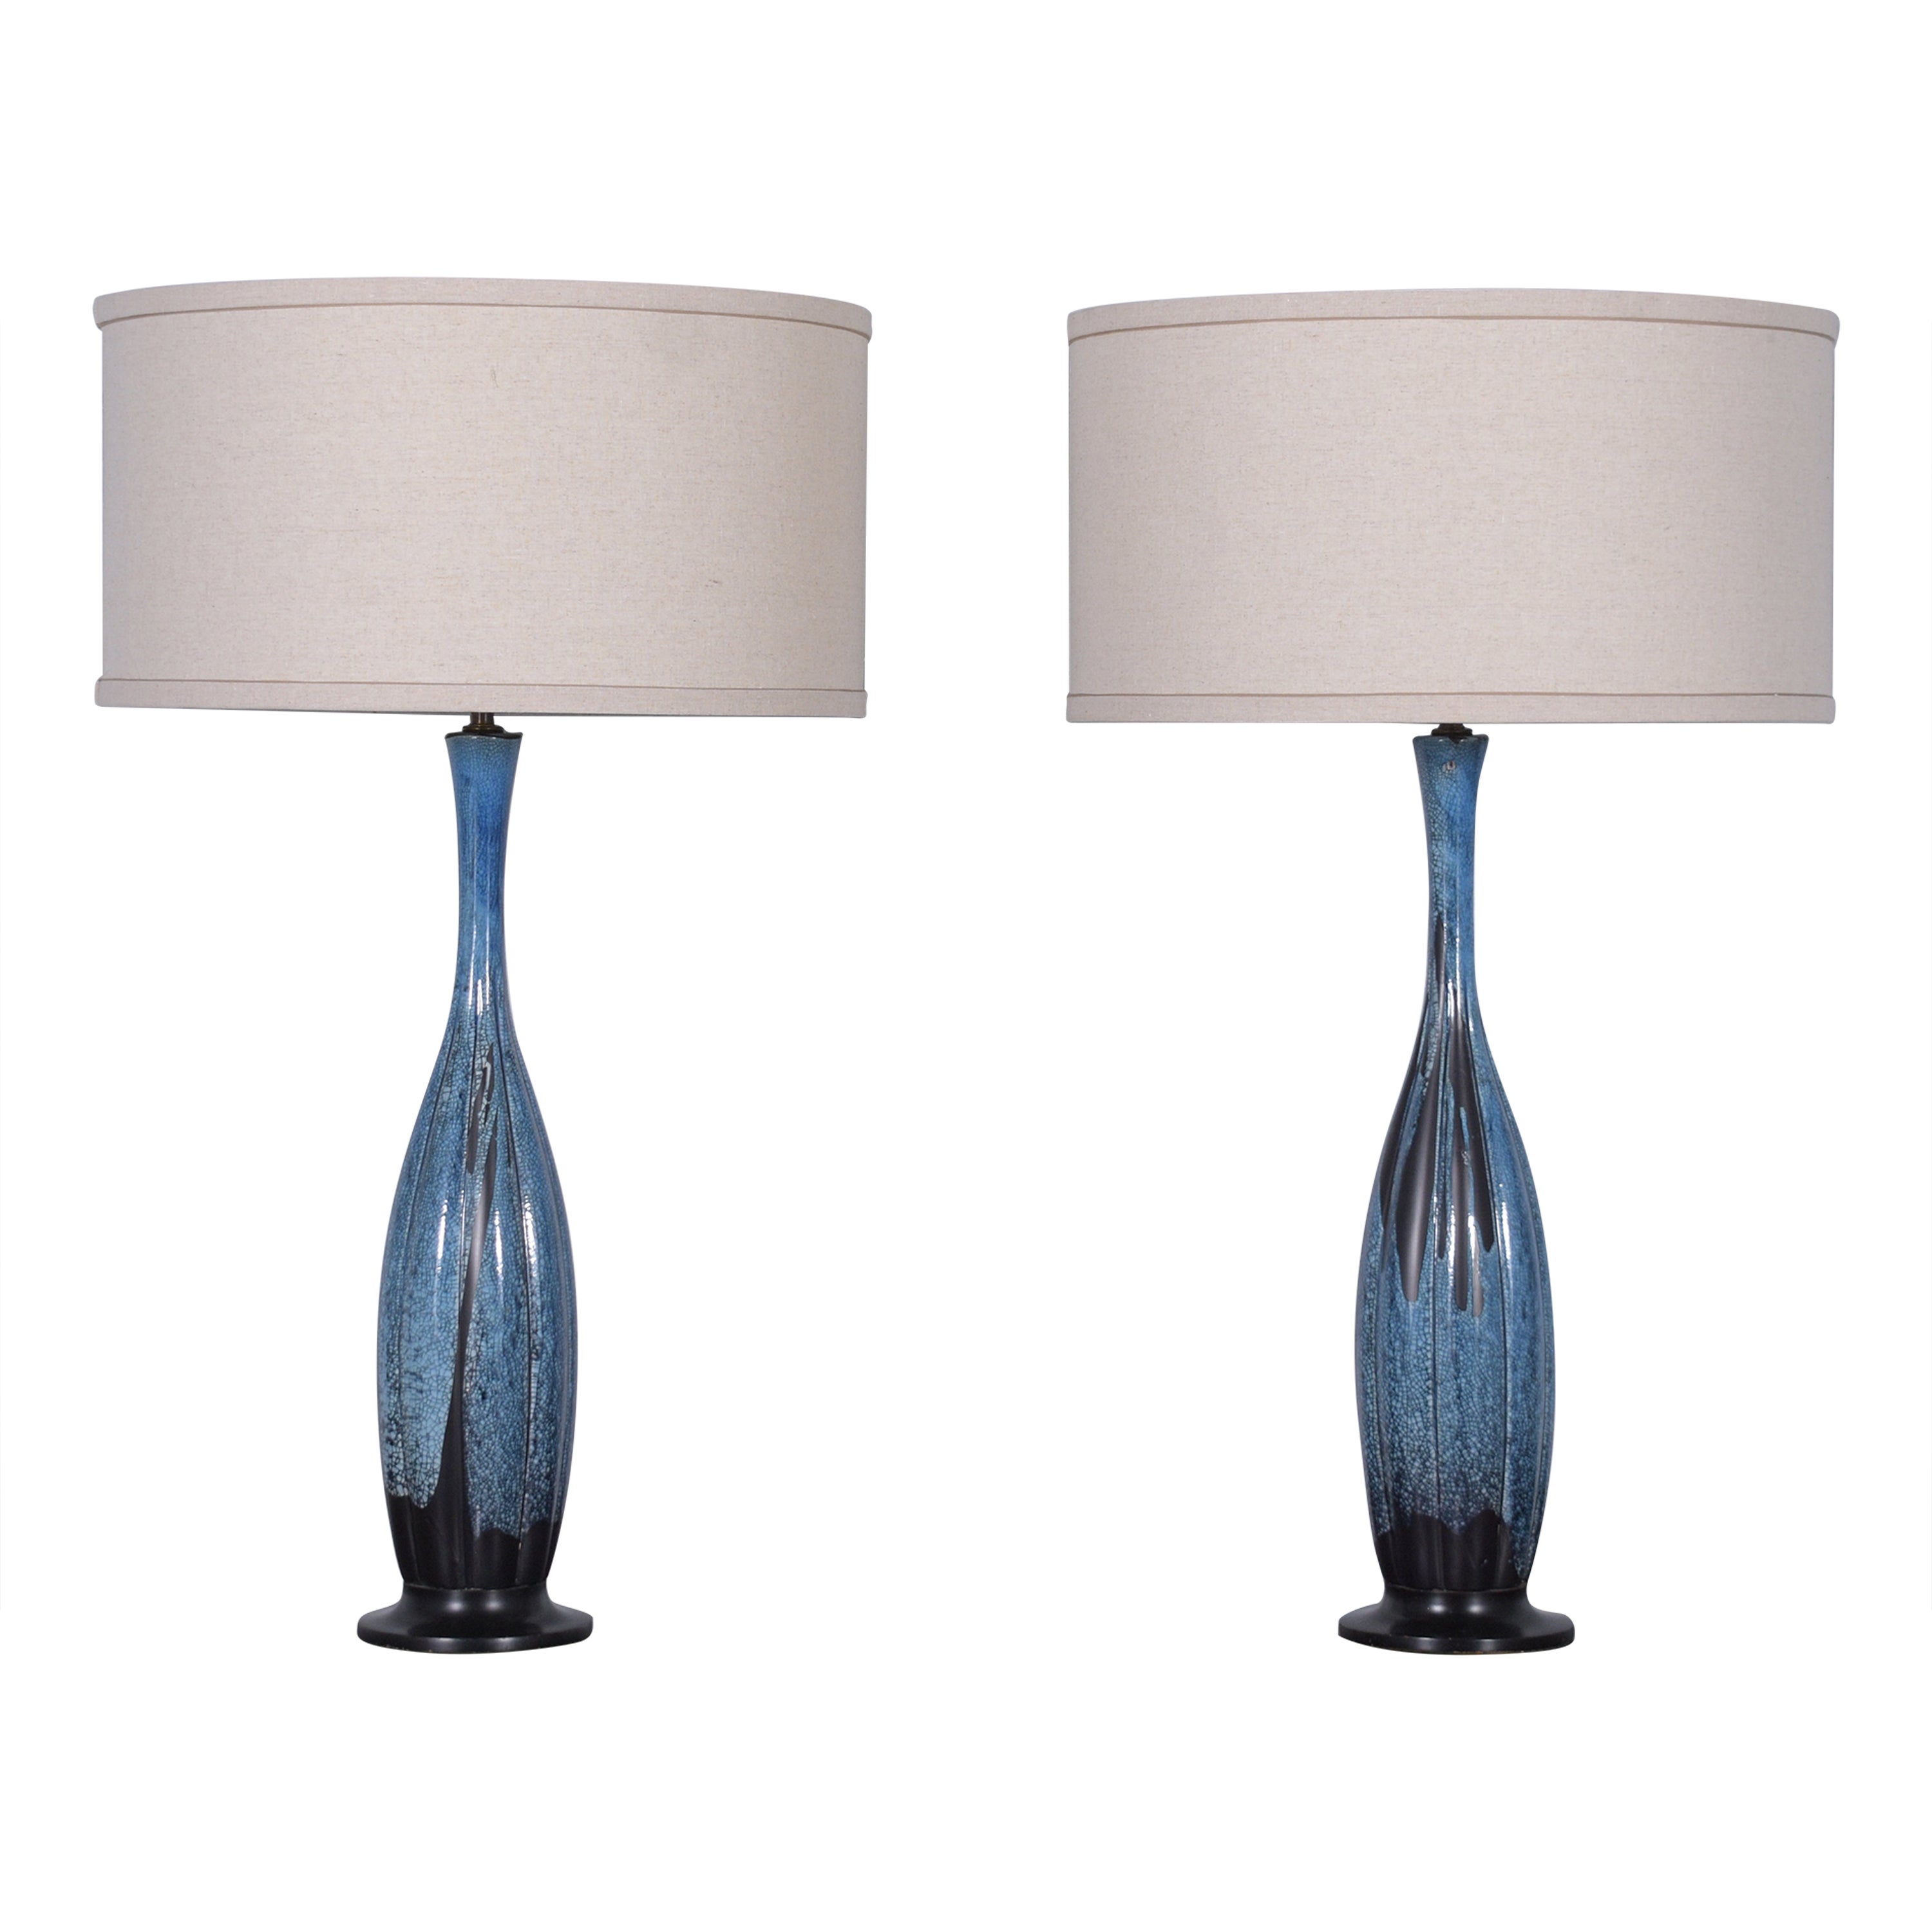 Vintage Mid-Century Porcelain Table Lamps: Timeless Elegance & Design